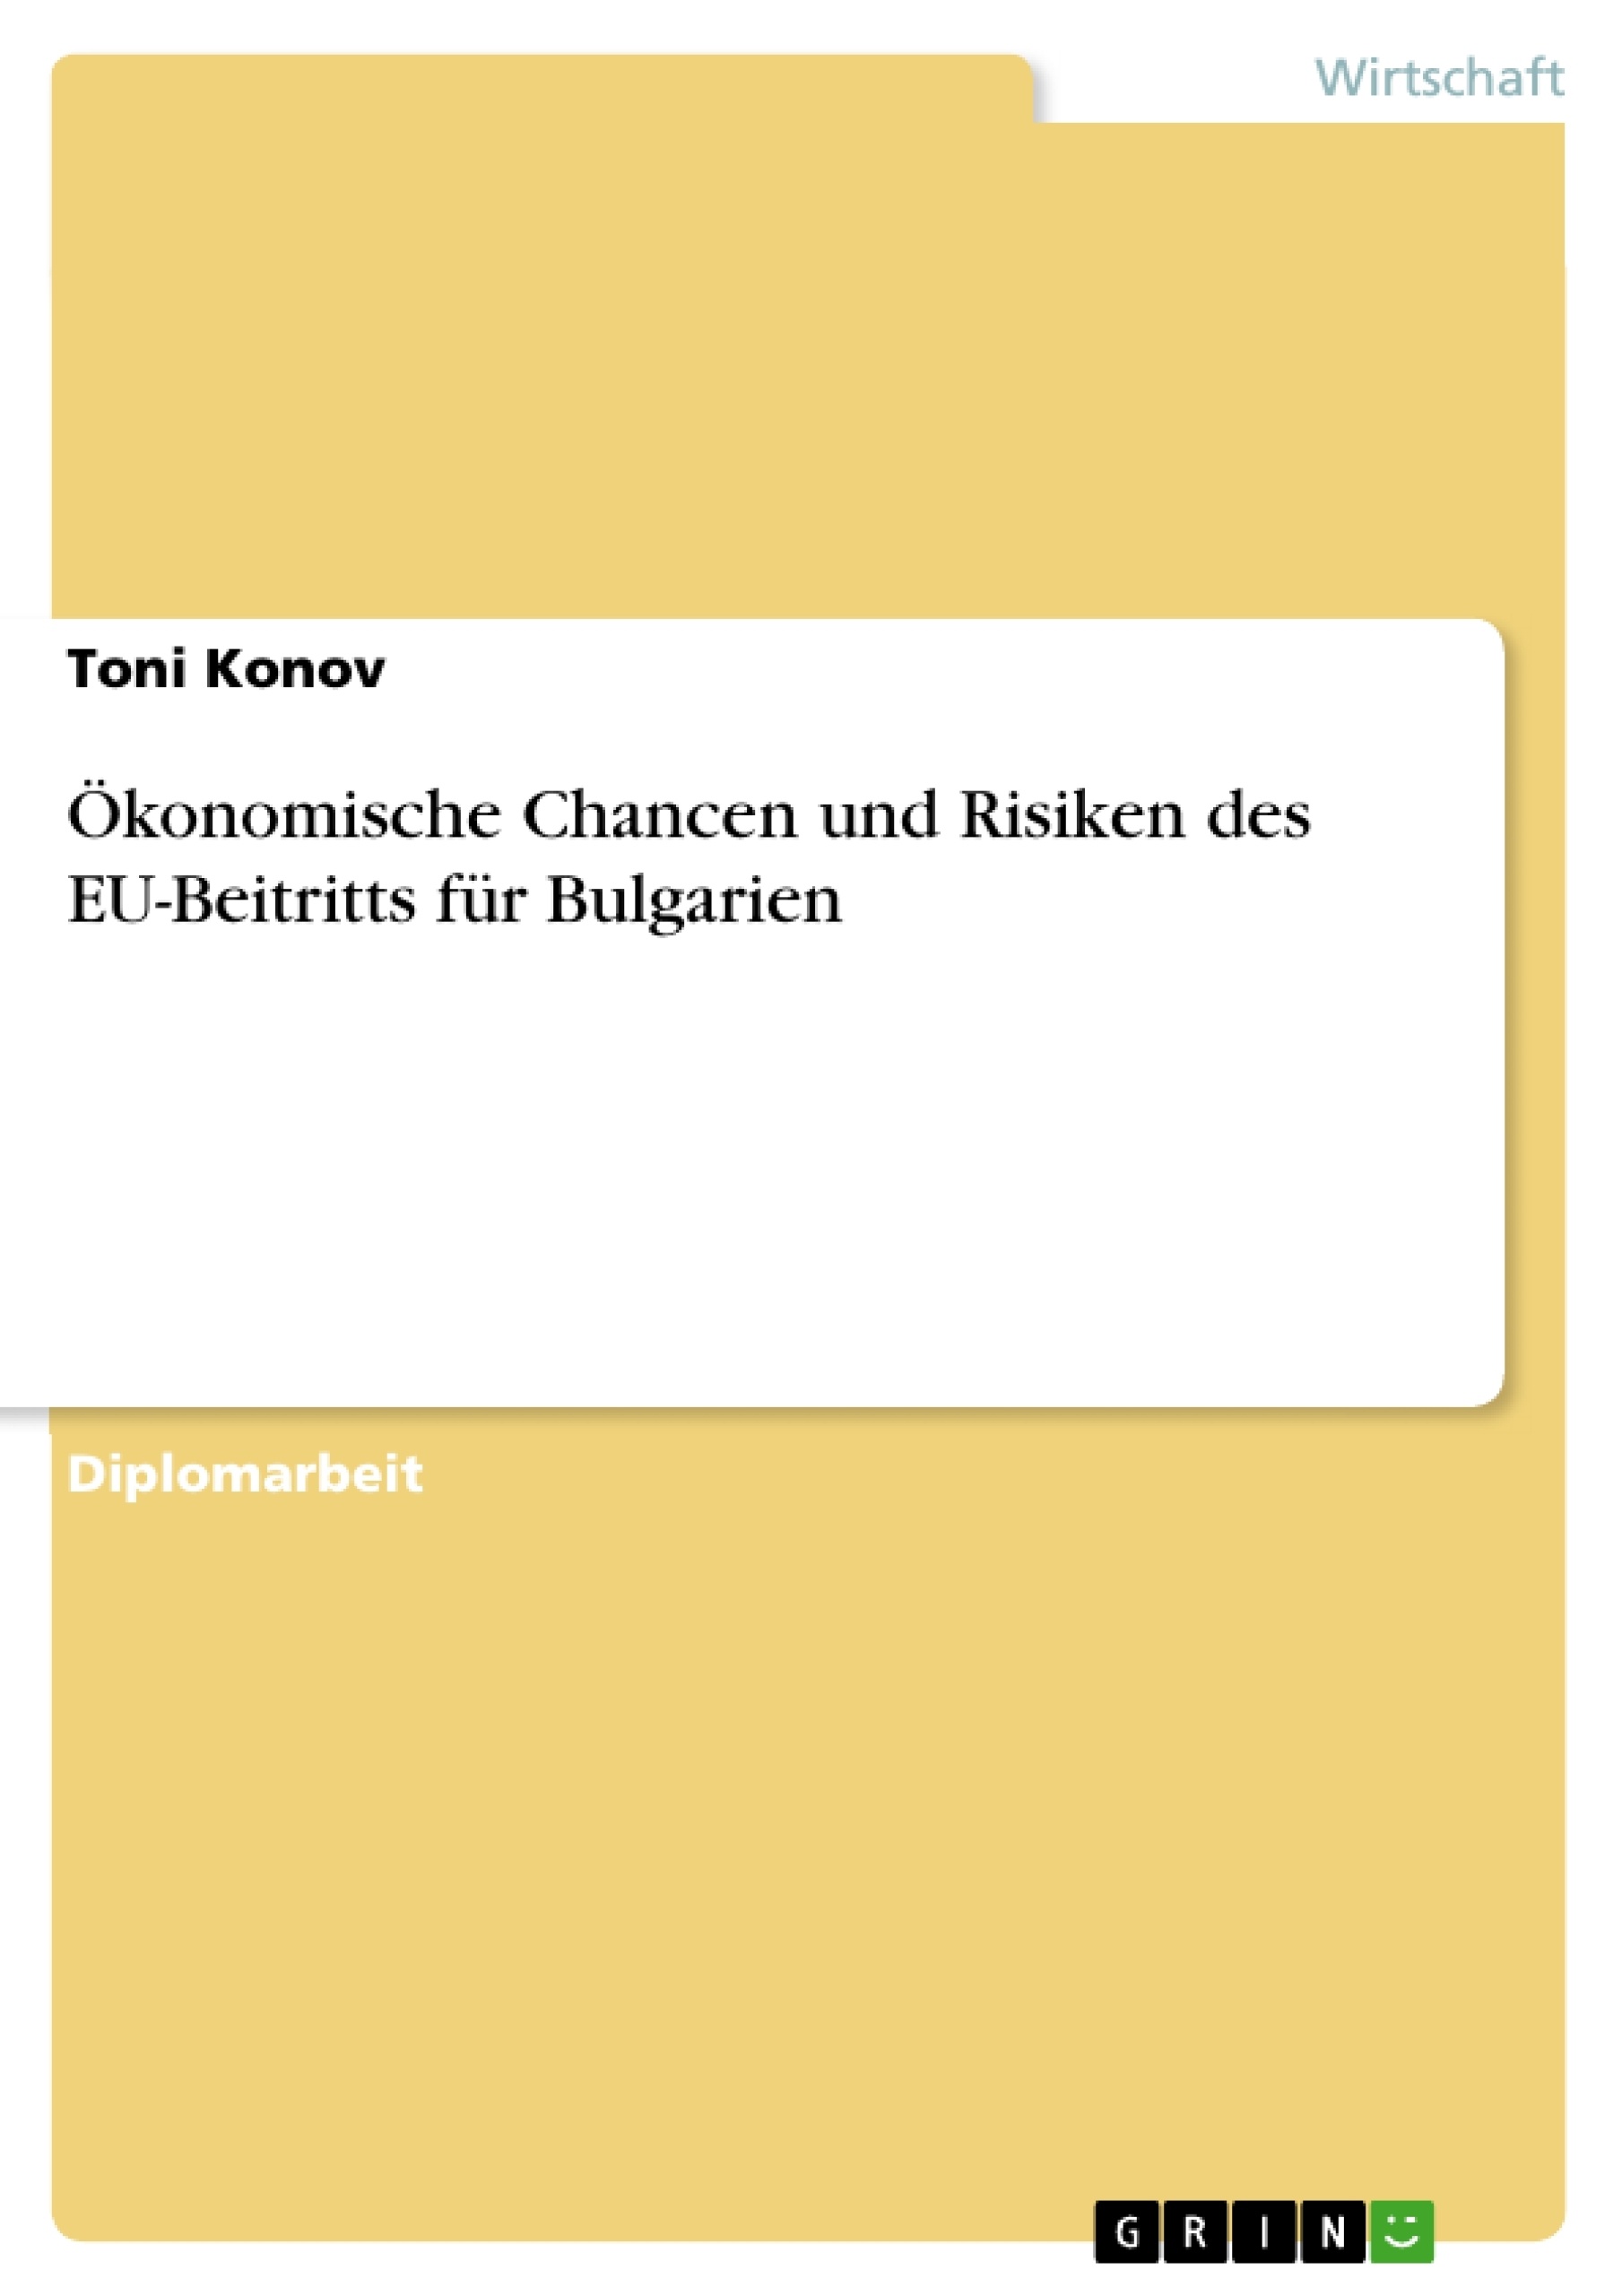 Título: Ökonomische Chancen und Risiken des EU-Beitritts für Bulgarien